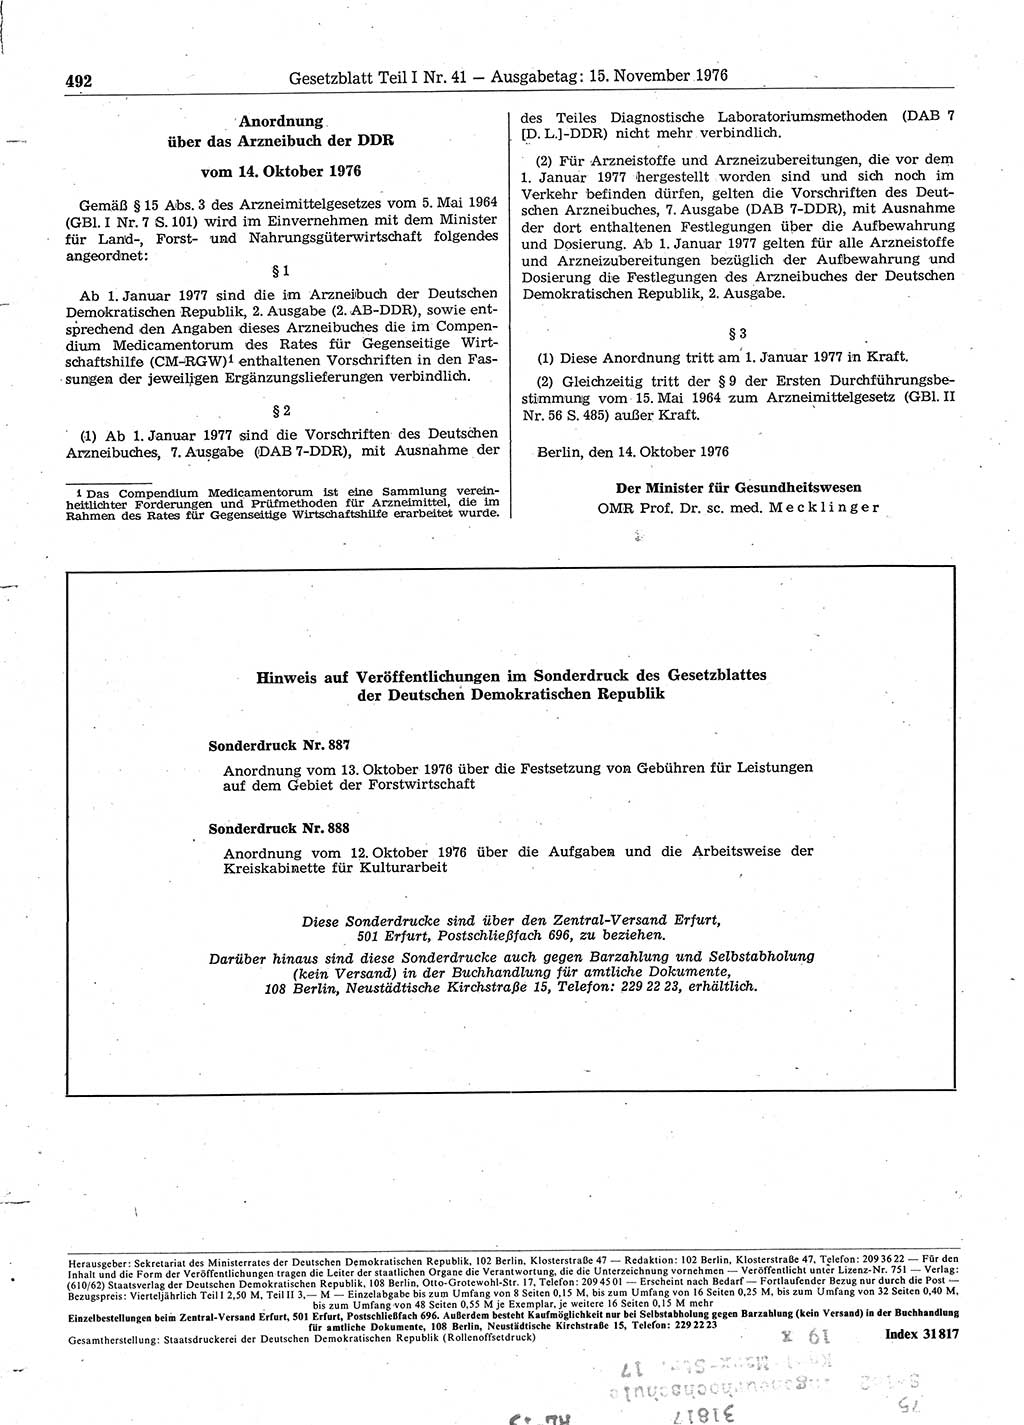 Gesetzblatt (GBl.) der Deutschen Demokratischen Republik (DDR) Teil Ⅰ 1976, Seite 492 (GBl. DDR Ⅰ 1976, S. 492)